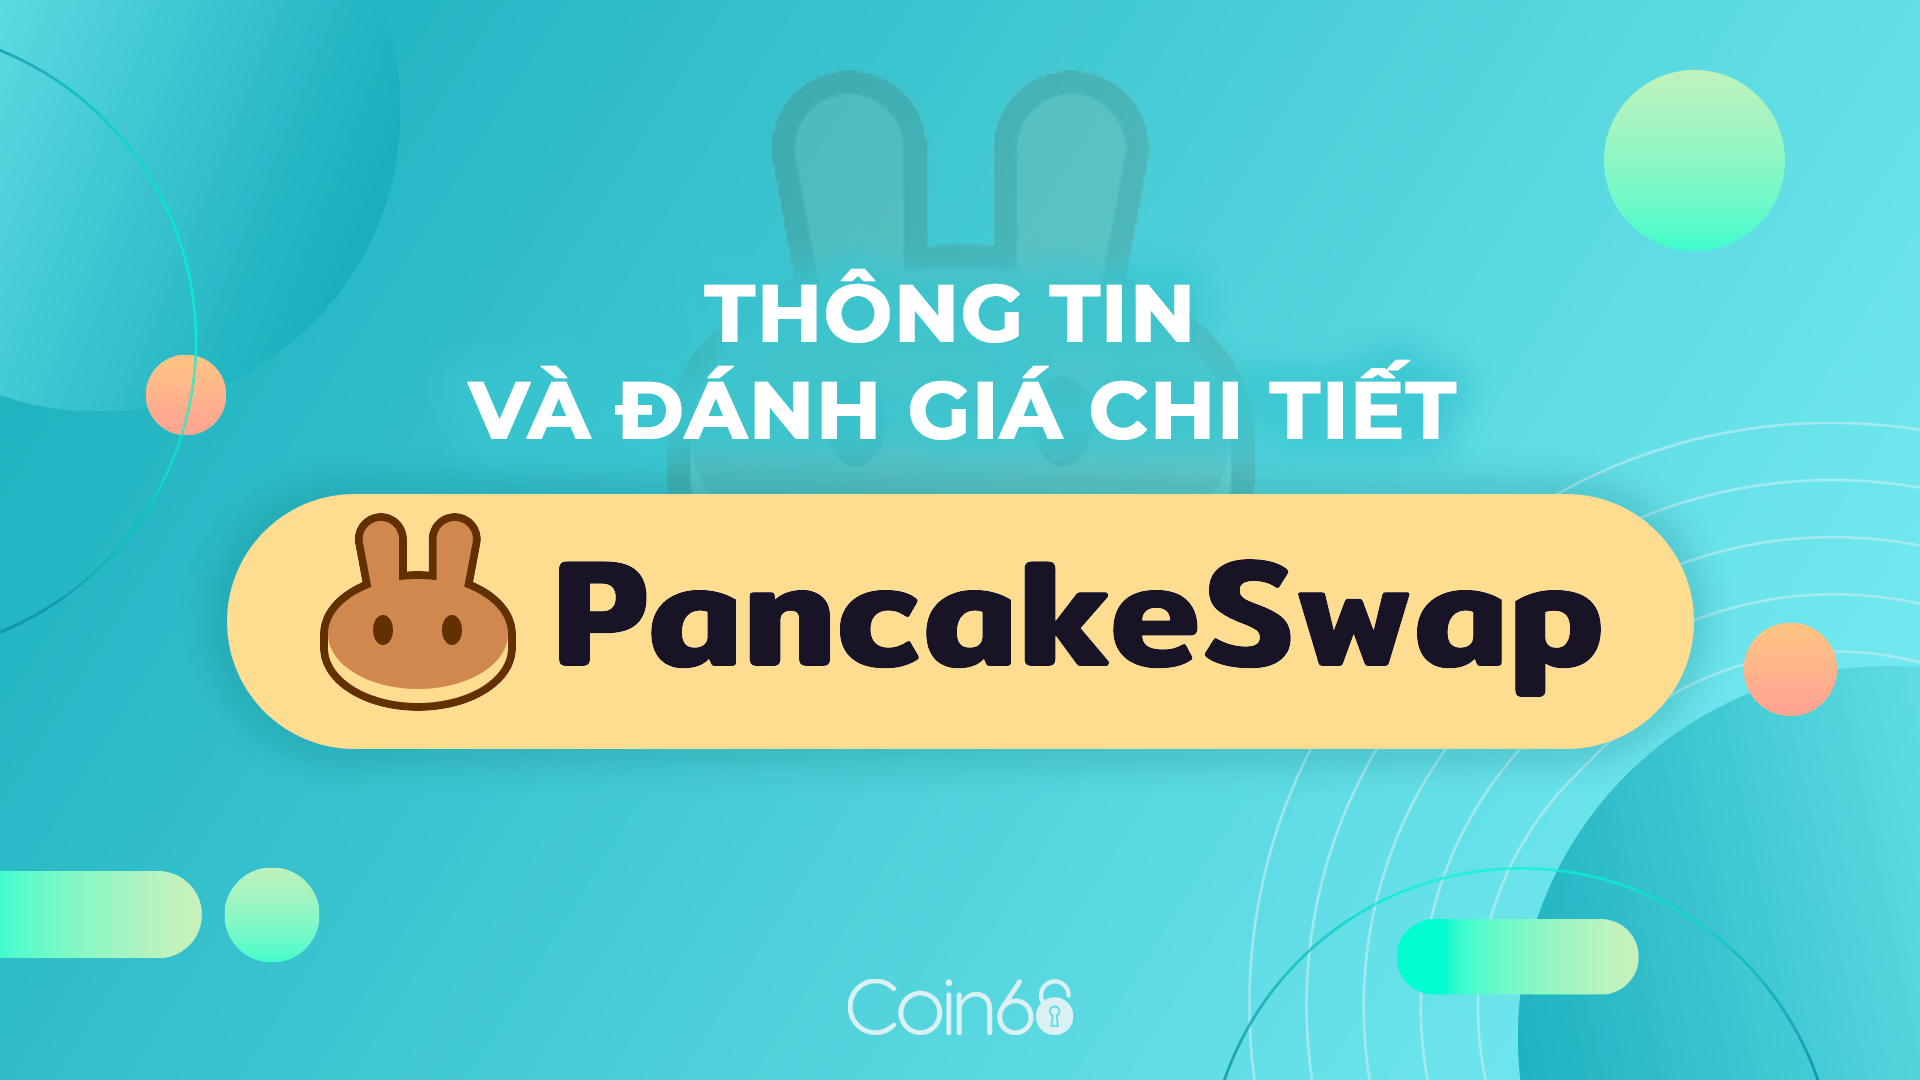 PancakeSwap Là Gì? Top 1 Trên BSC - Hướng Dẫn Farming Và Staking Cake Trên PancakeSwap